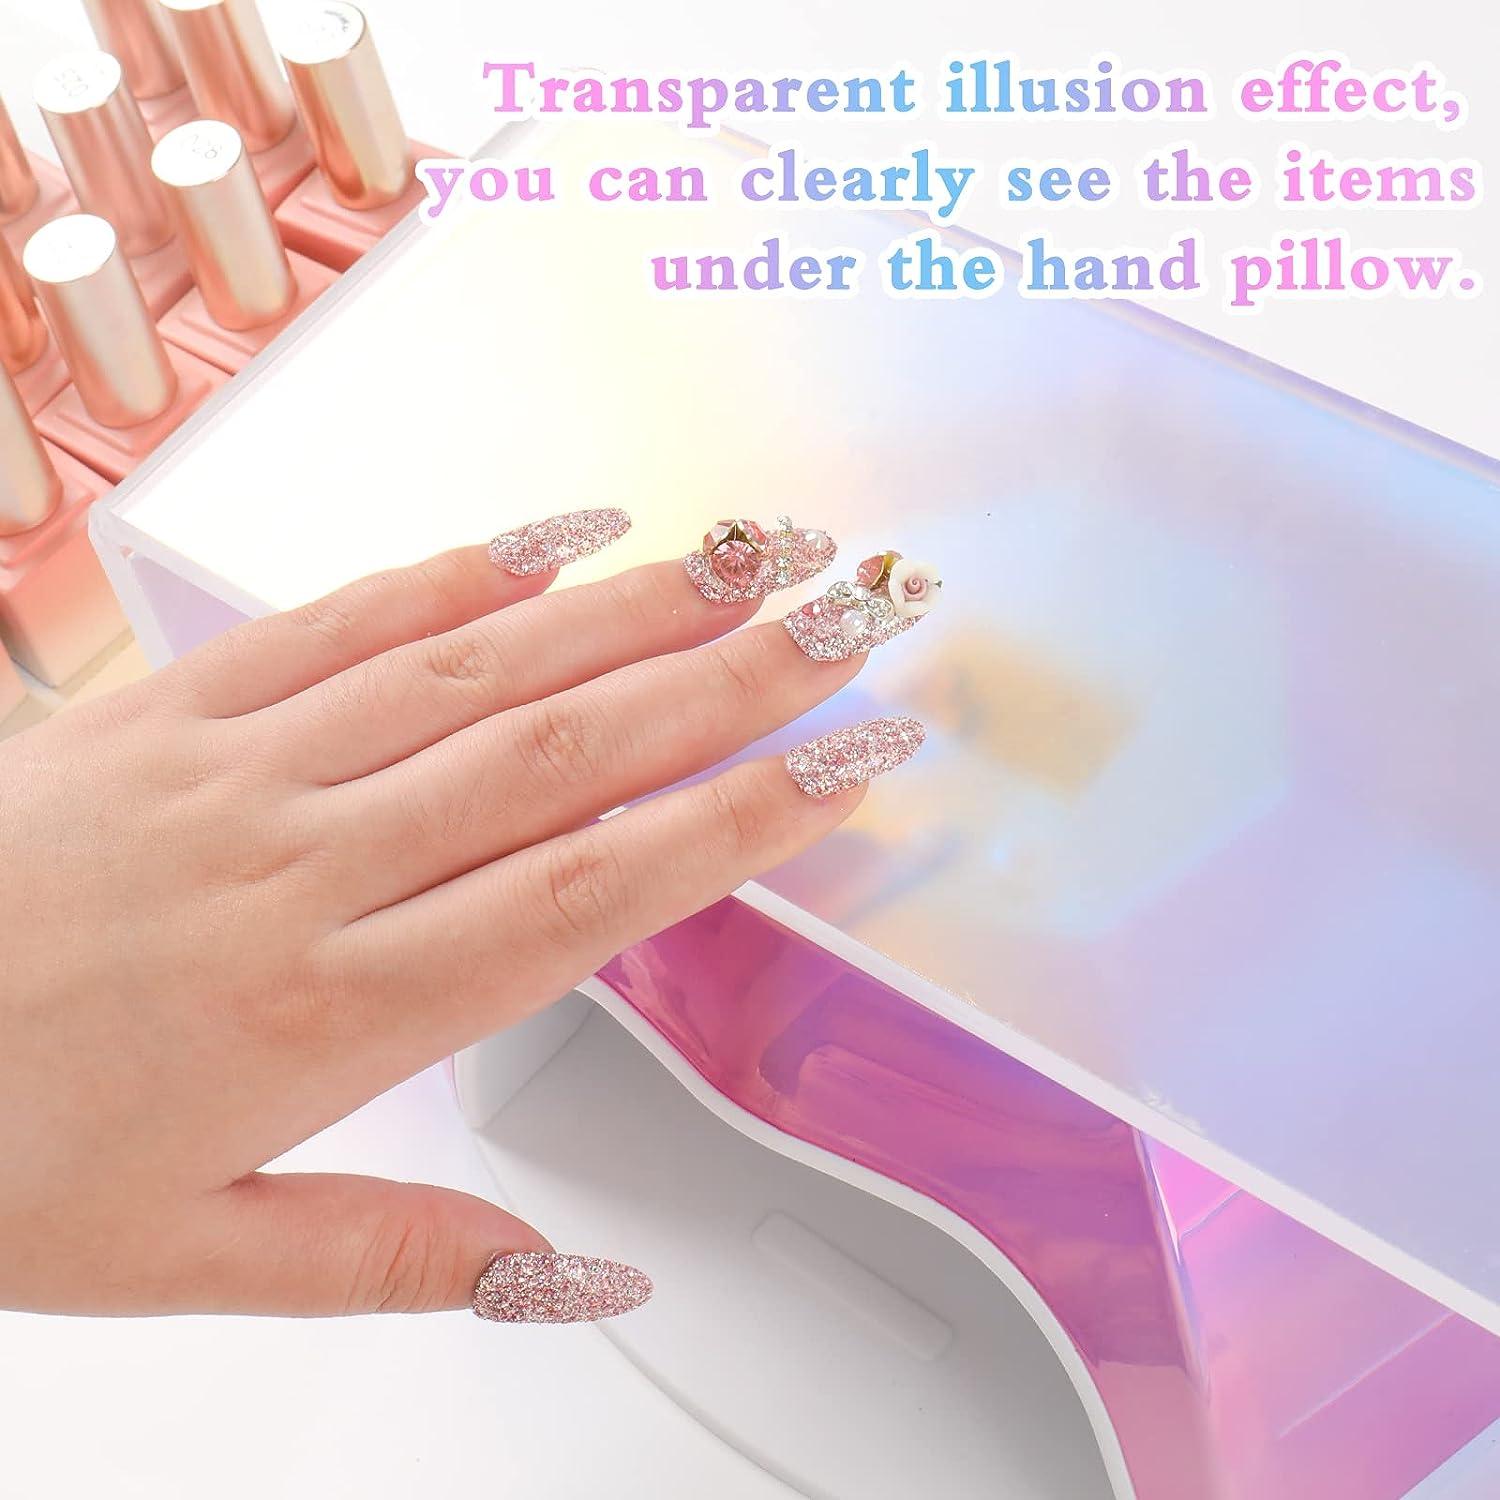  FRCOLOR 5pcs Nail Art Hand Pillow Art Display Nail